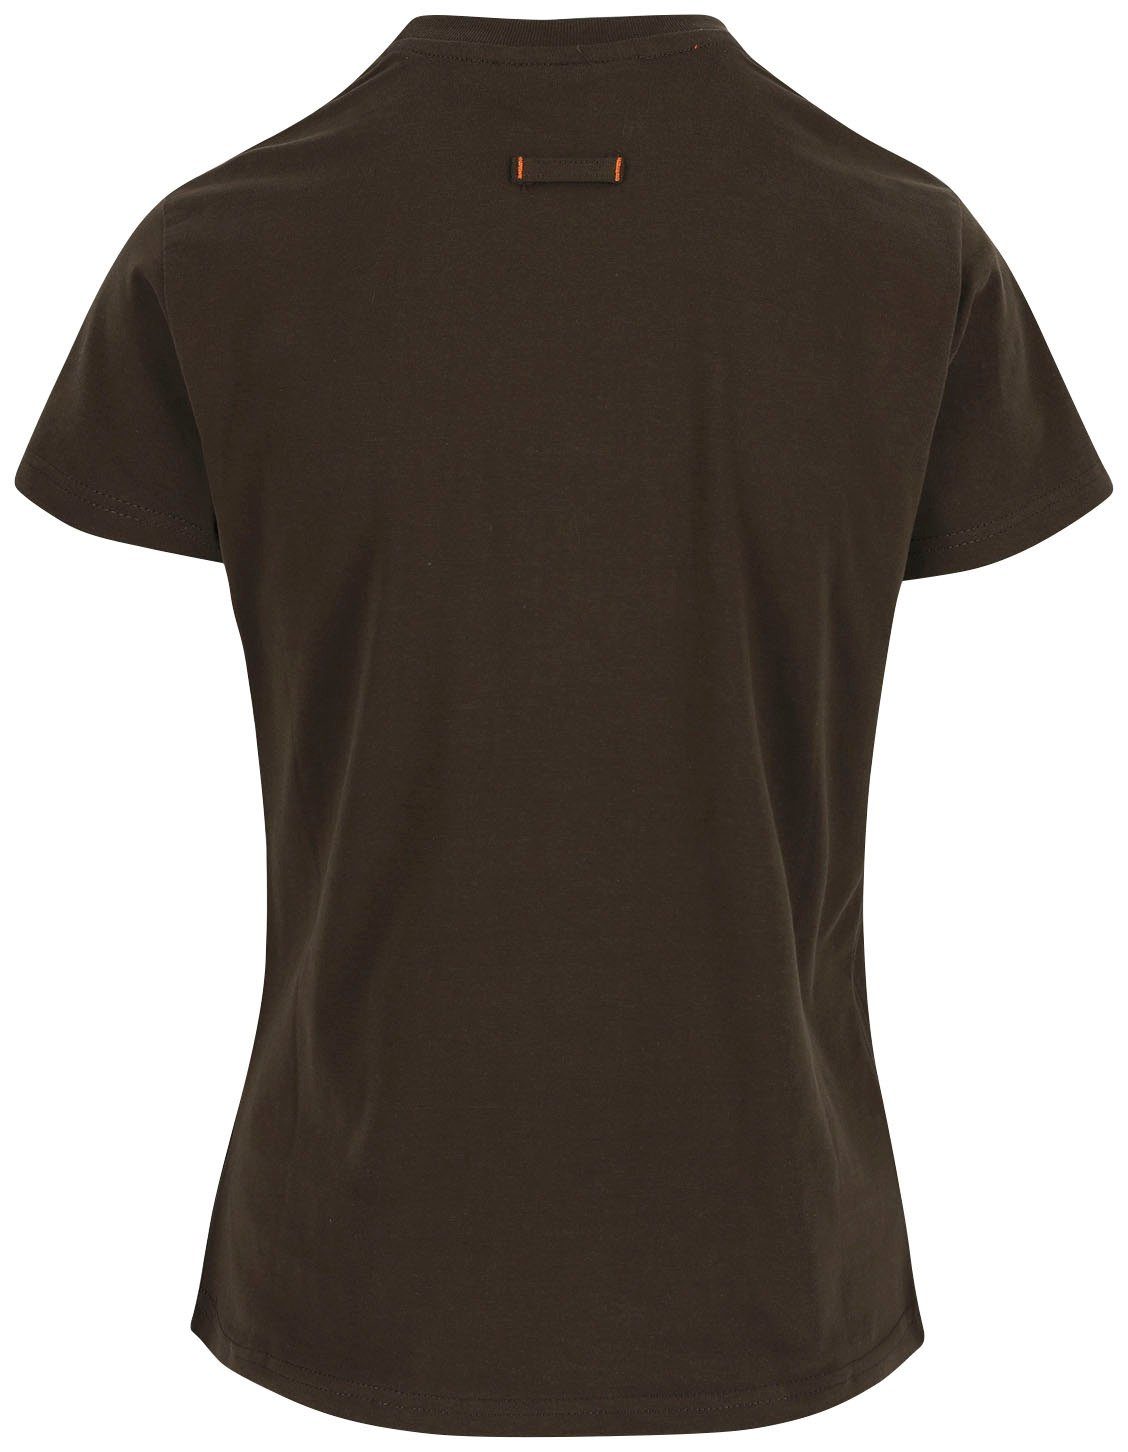 Tragegefühl T-Shirt Damen Schlaufe, hintere Epona 1 angenehmes braun Herock Figurbetont, T-Shirt Kurzärmlig